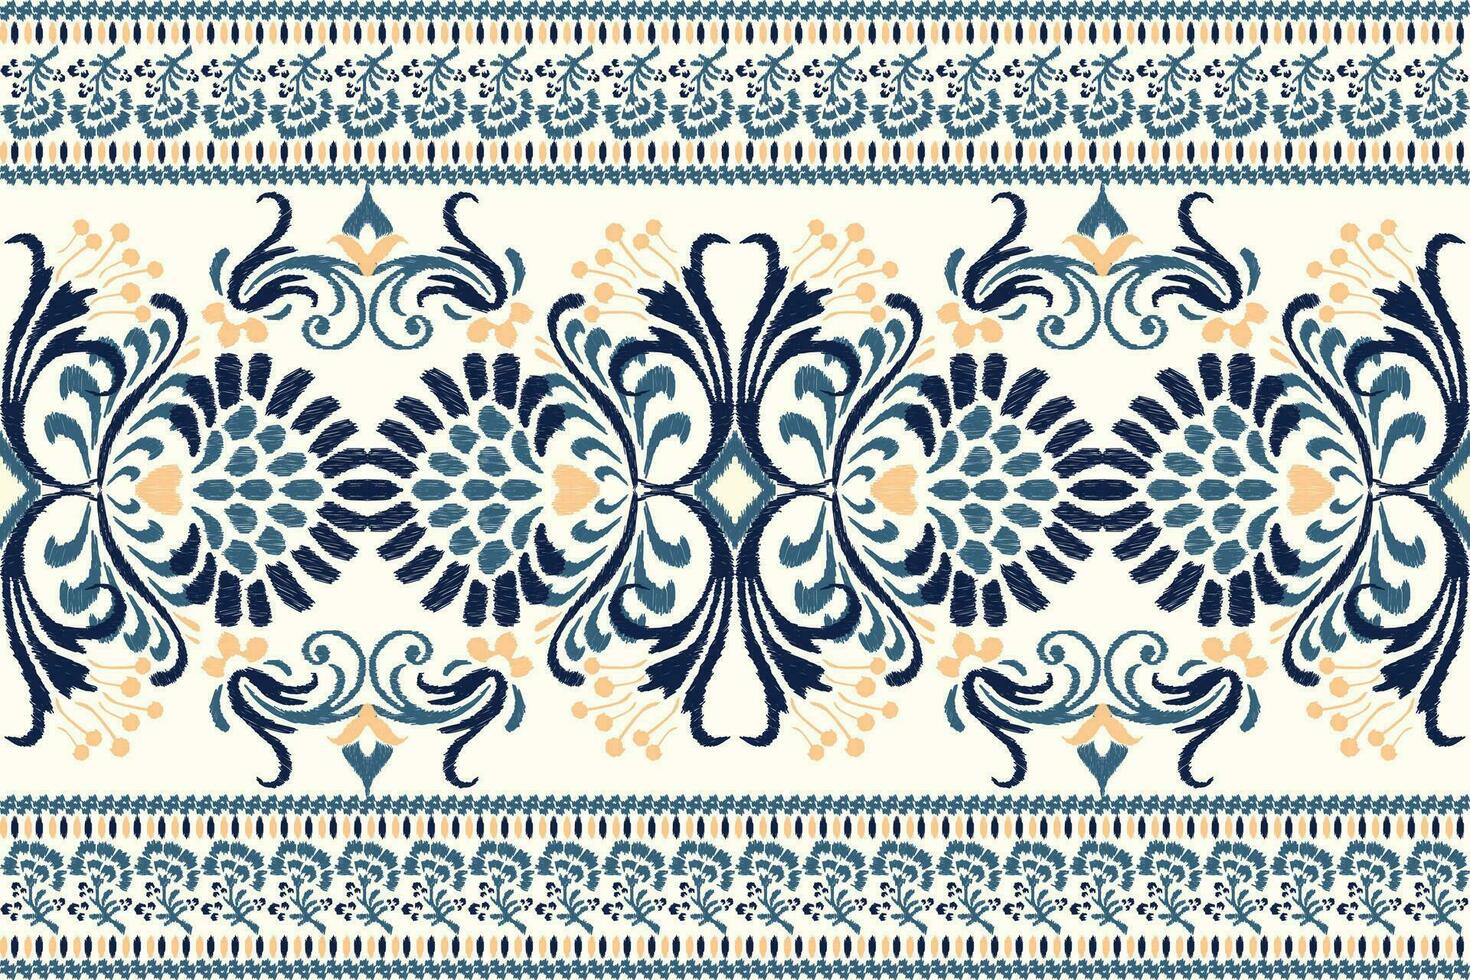 ikat bloemen paisley borduurwerk Aan wit achtergrond.ikat etnisch oosters patroon traditioneel.azteken stijl abstract vector illustratie.ontwerp voor textuur, stof, kleding, verpakking, decoratie, sarong, sjaal